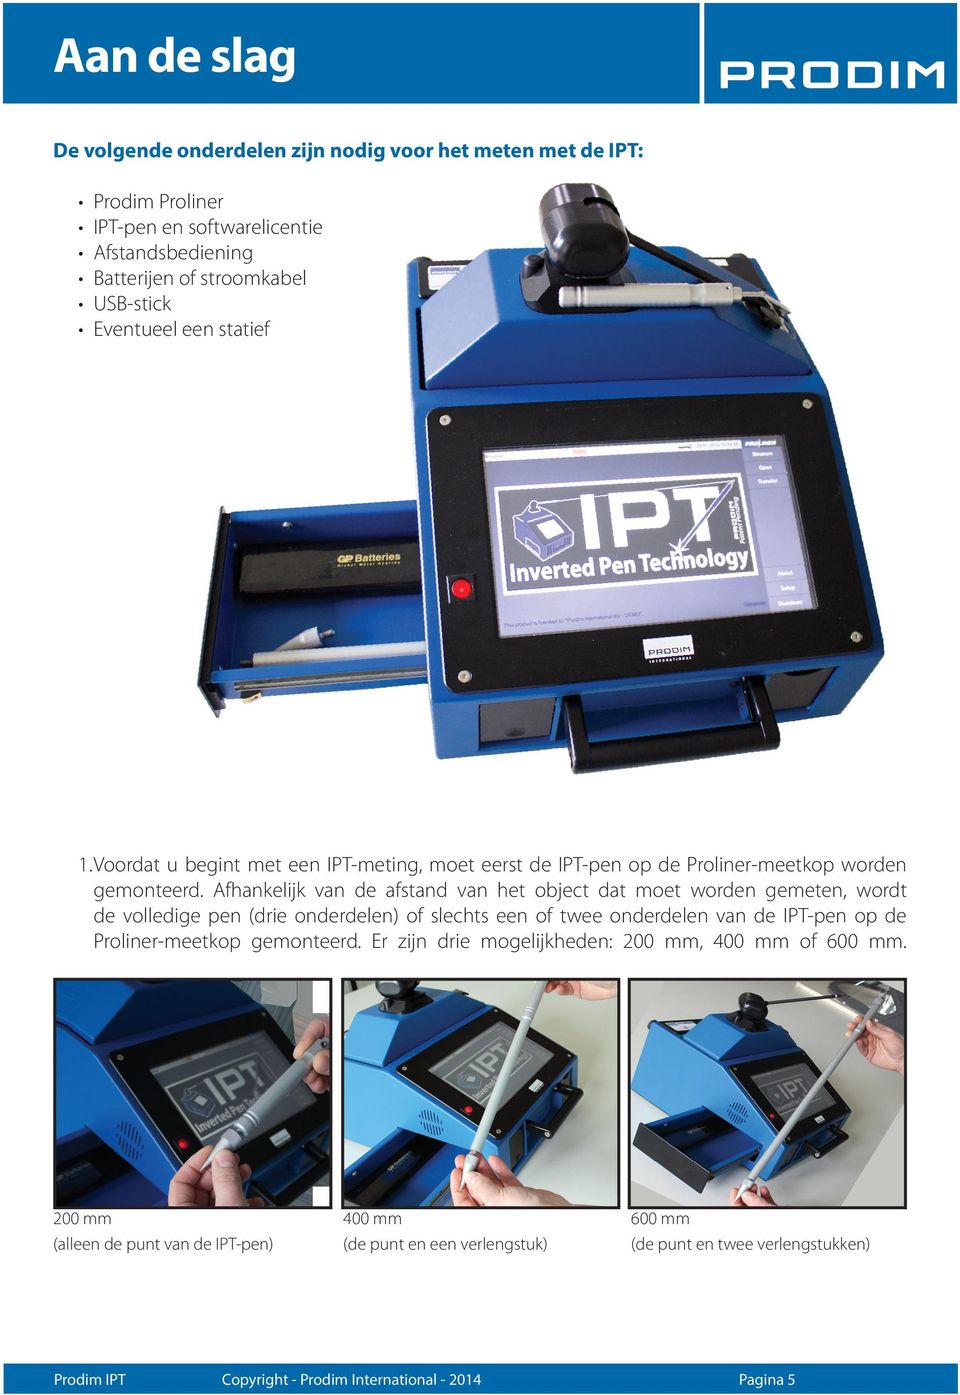 Afhankelijk van de afstand van het object dat moet worden gemeten, wordt de volledige pen (drie onderdelen) of slechts een of twee onderdelen van de IPT-pen op de Proliner-meetkop